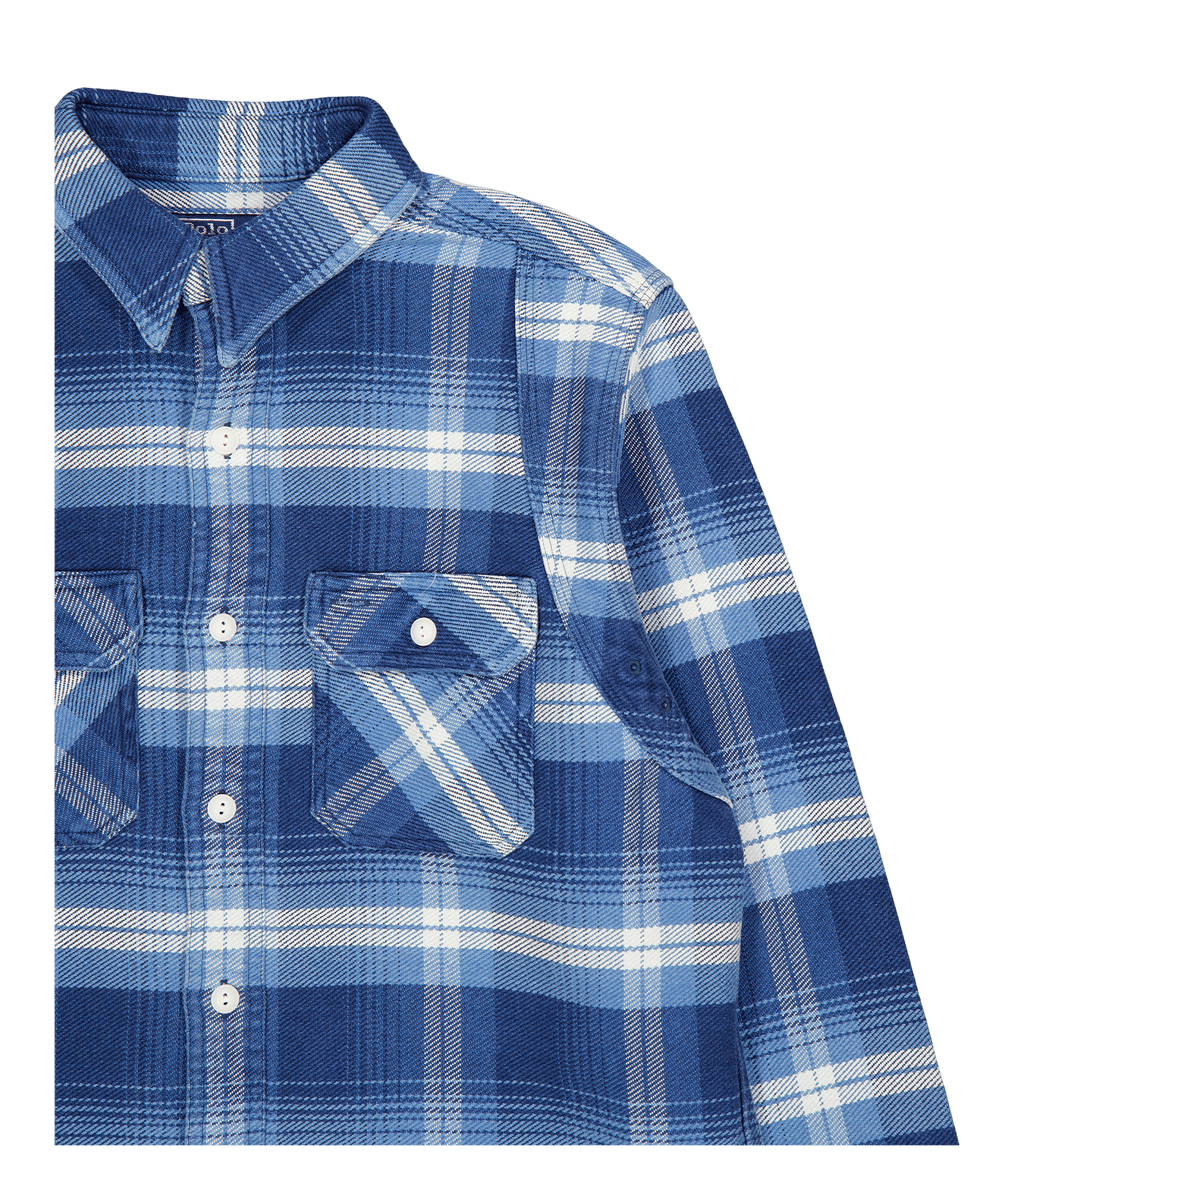 Polo Ralph Lauren Outdoor Flannel Shirt 6230